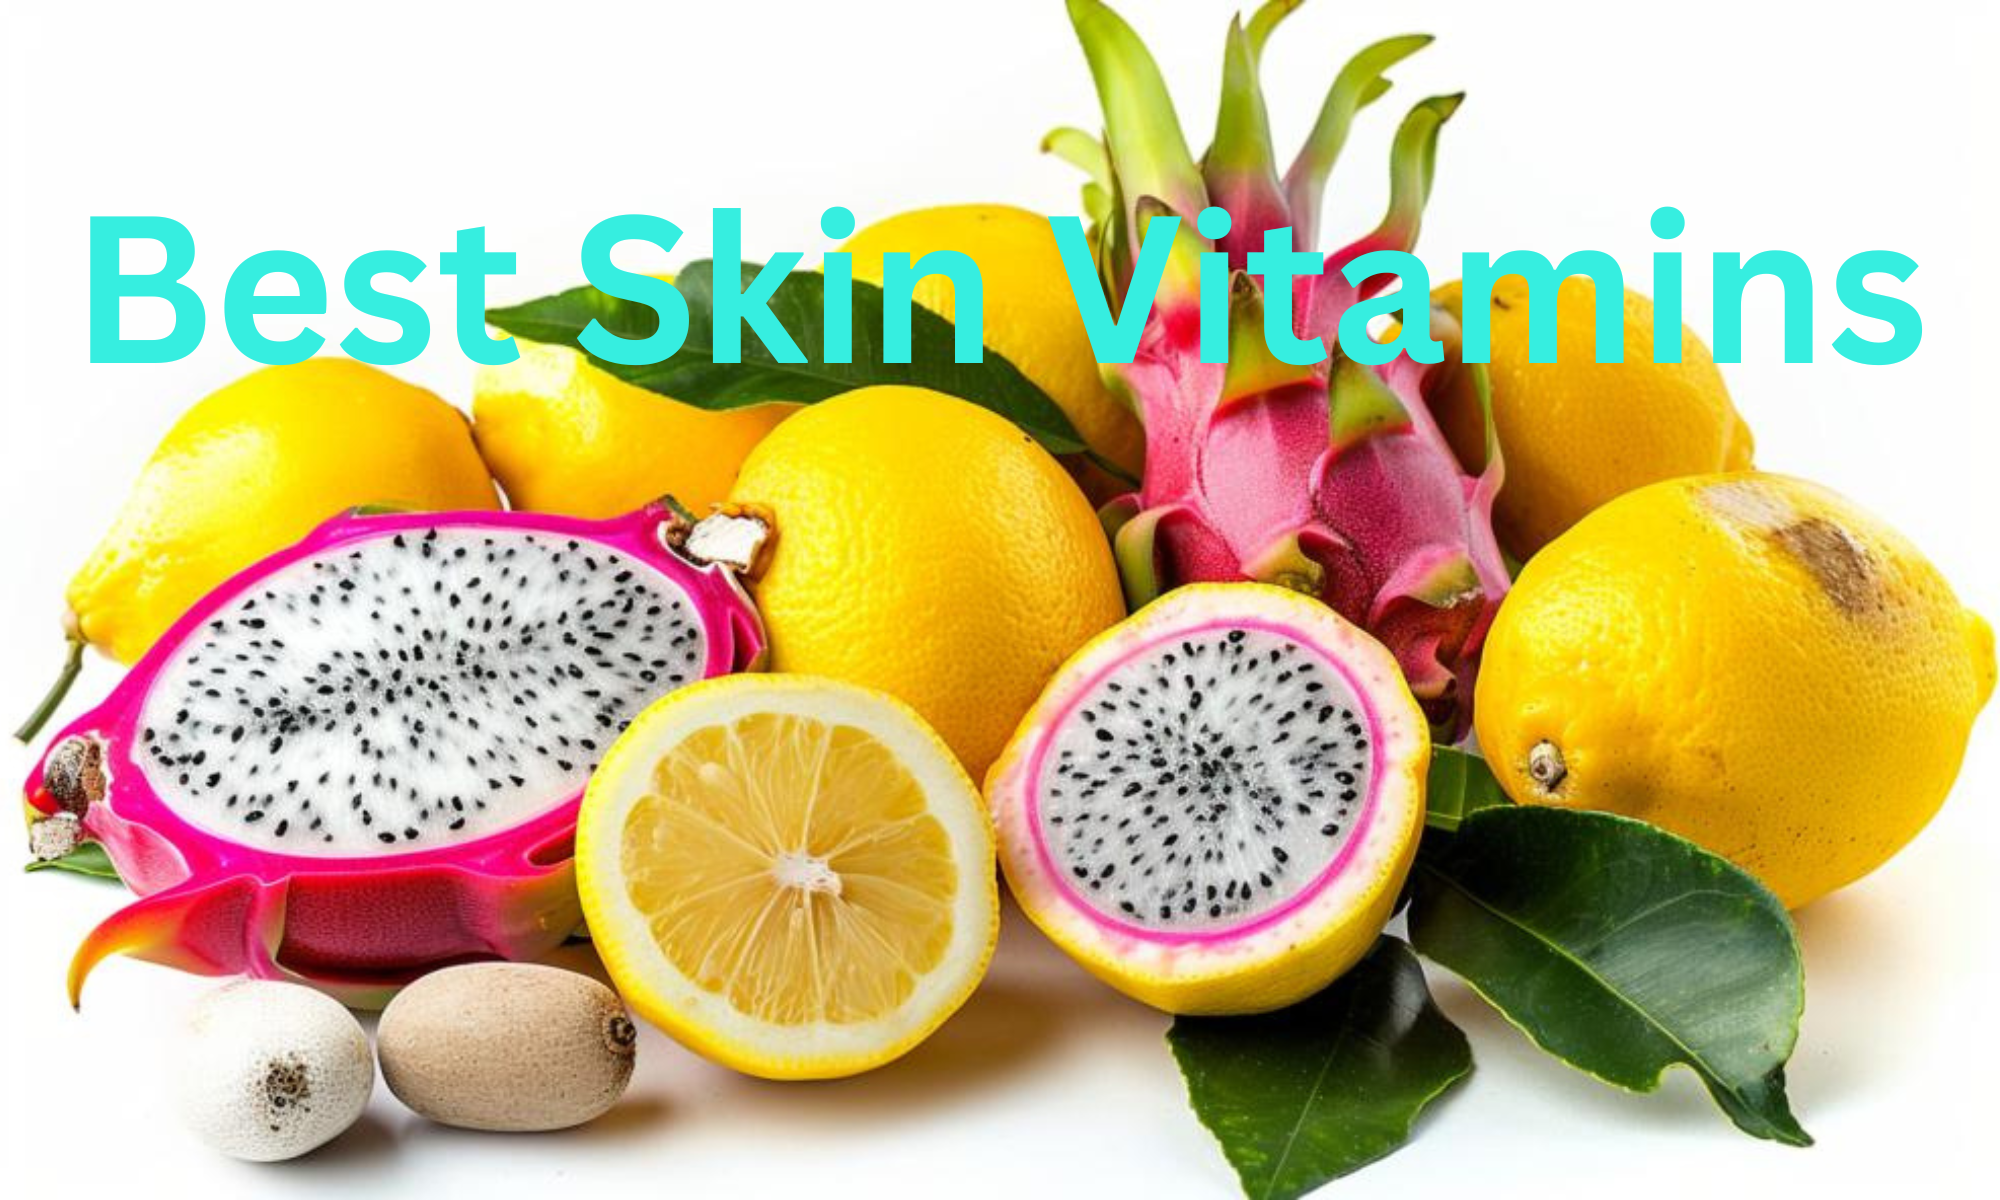 Best Skin Vitamins